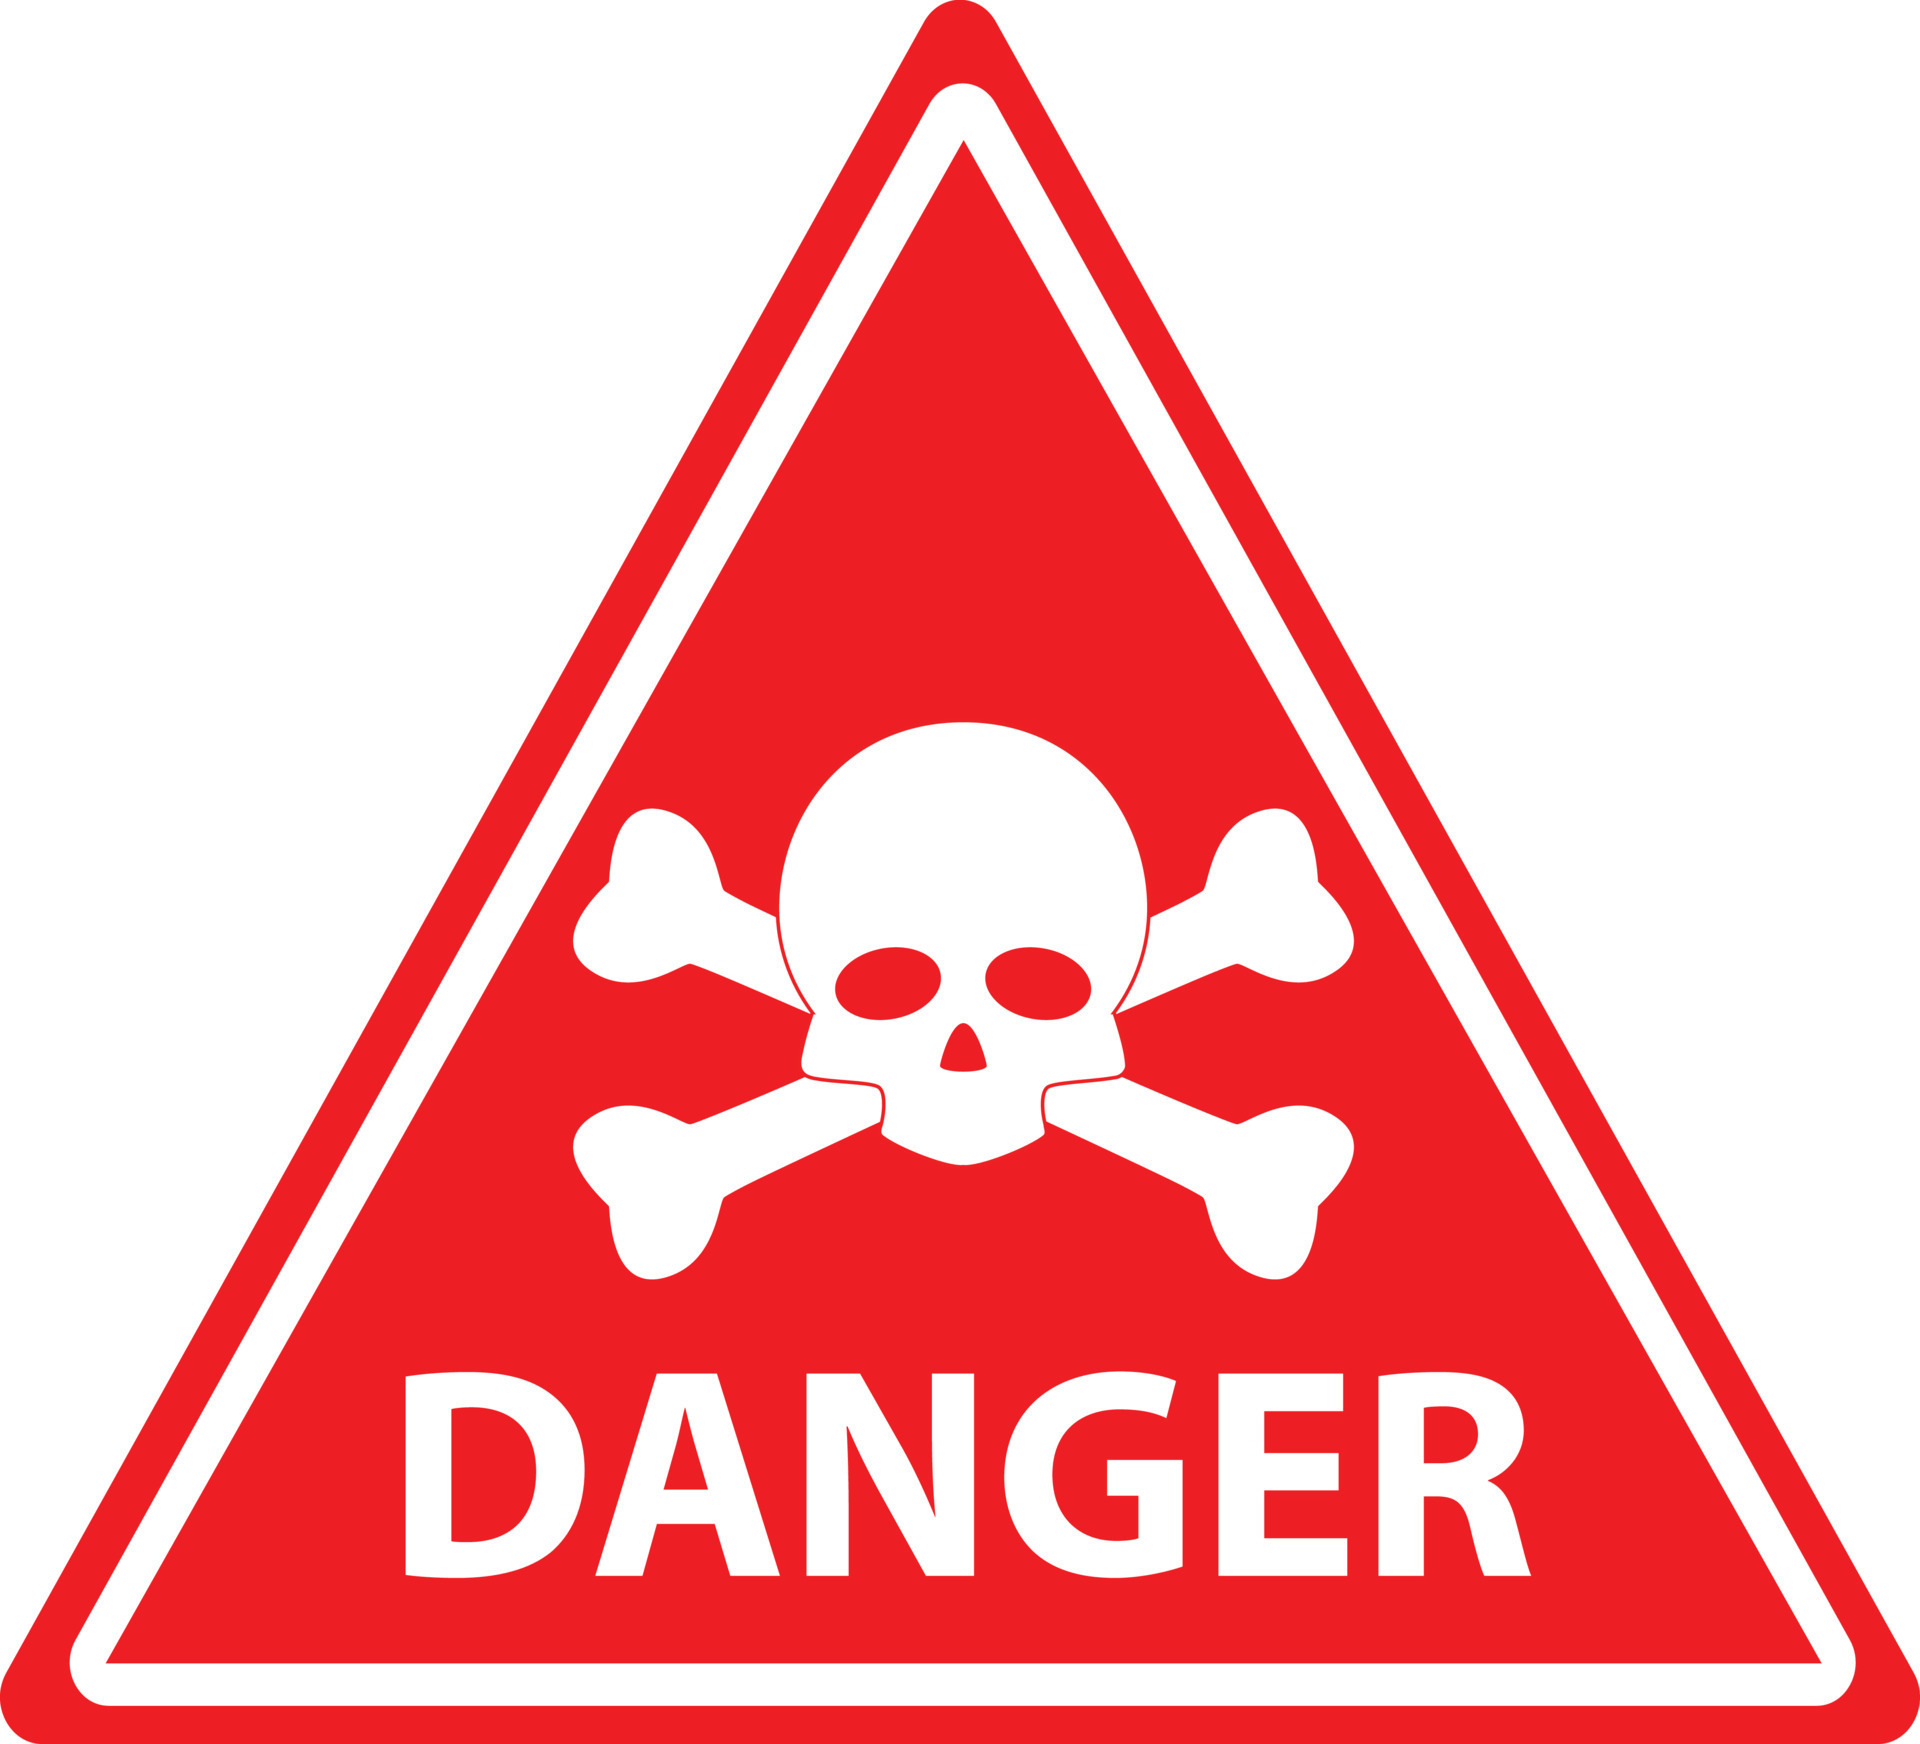 Red Danger Skull Crossbones Warning On White Background Danger Warning